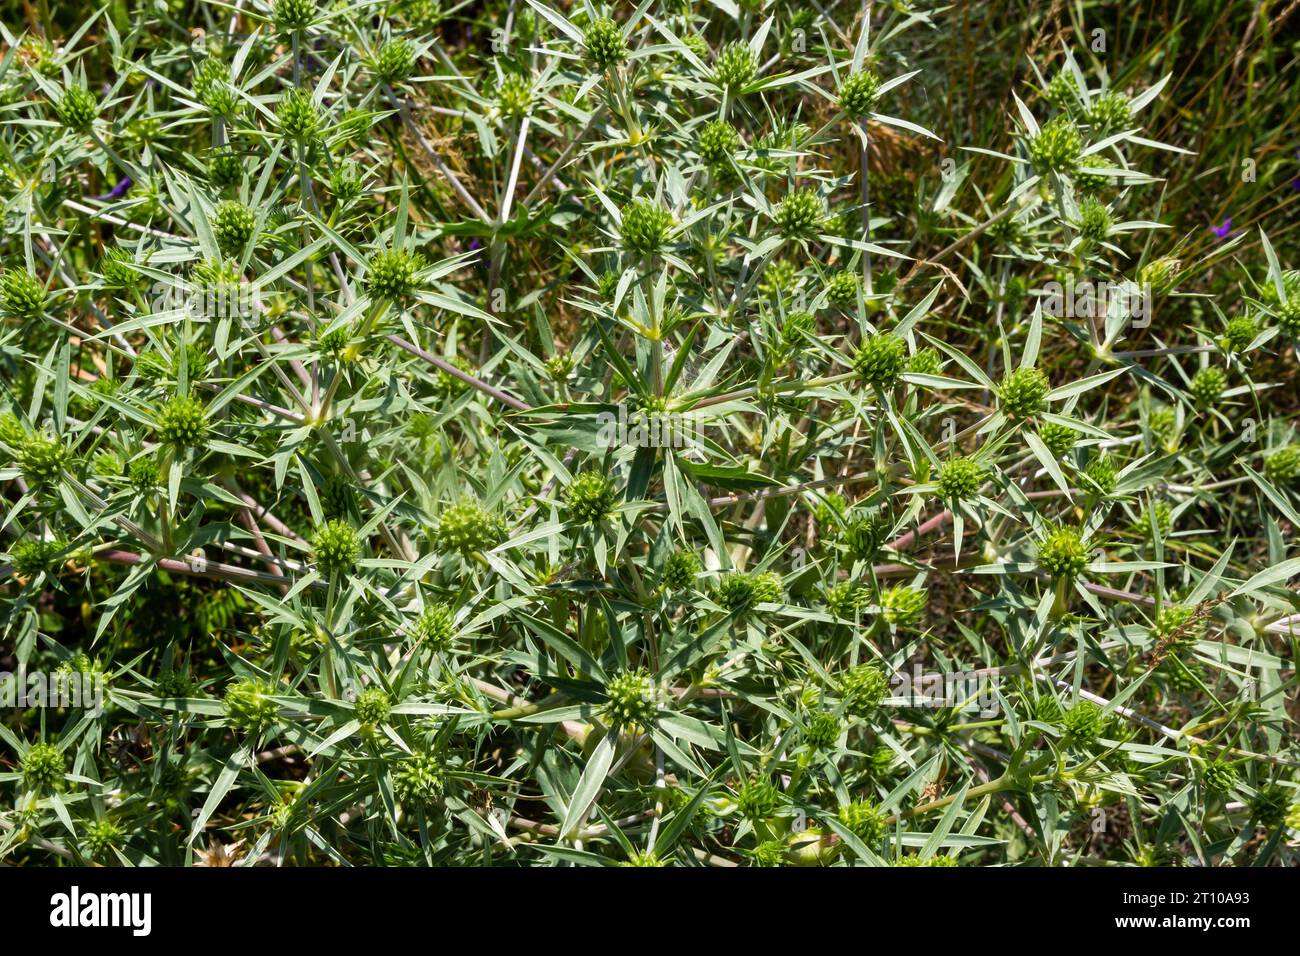 Campo o eryngo eryngium campestre. Cardo corredor. Impianto membro della famiglia Apiaceae Foto Stock